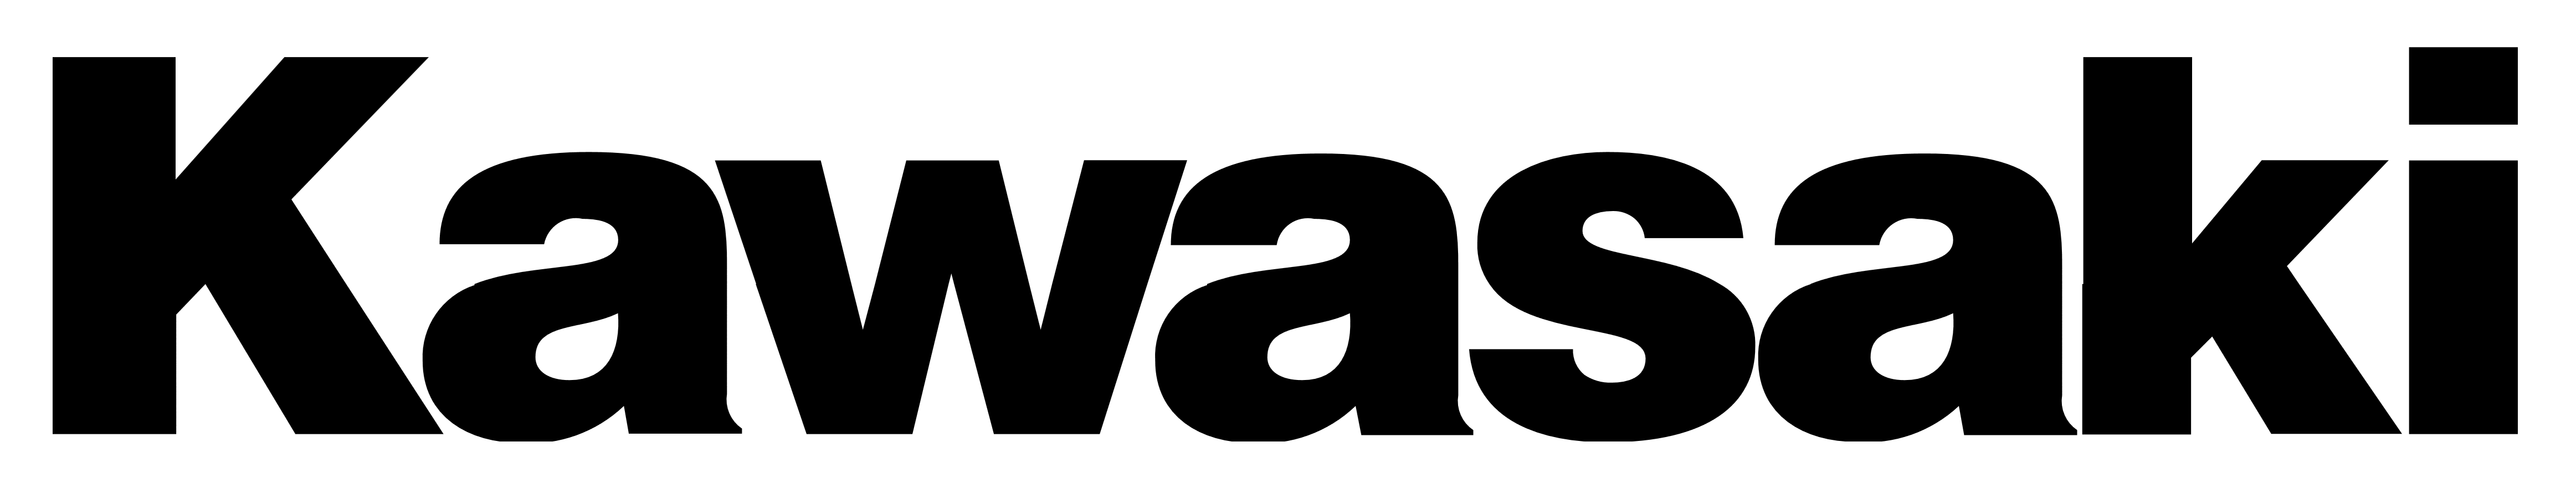 Vydržet Zvyklí Nebe kawasaki logo hd Jídelní lístek Sportovec Tulipány